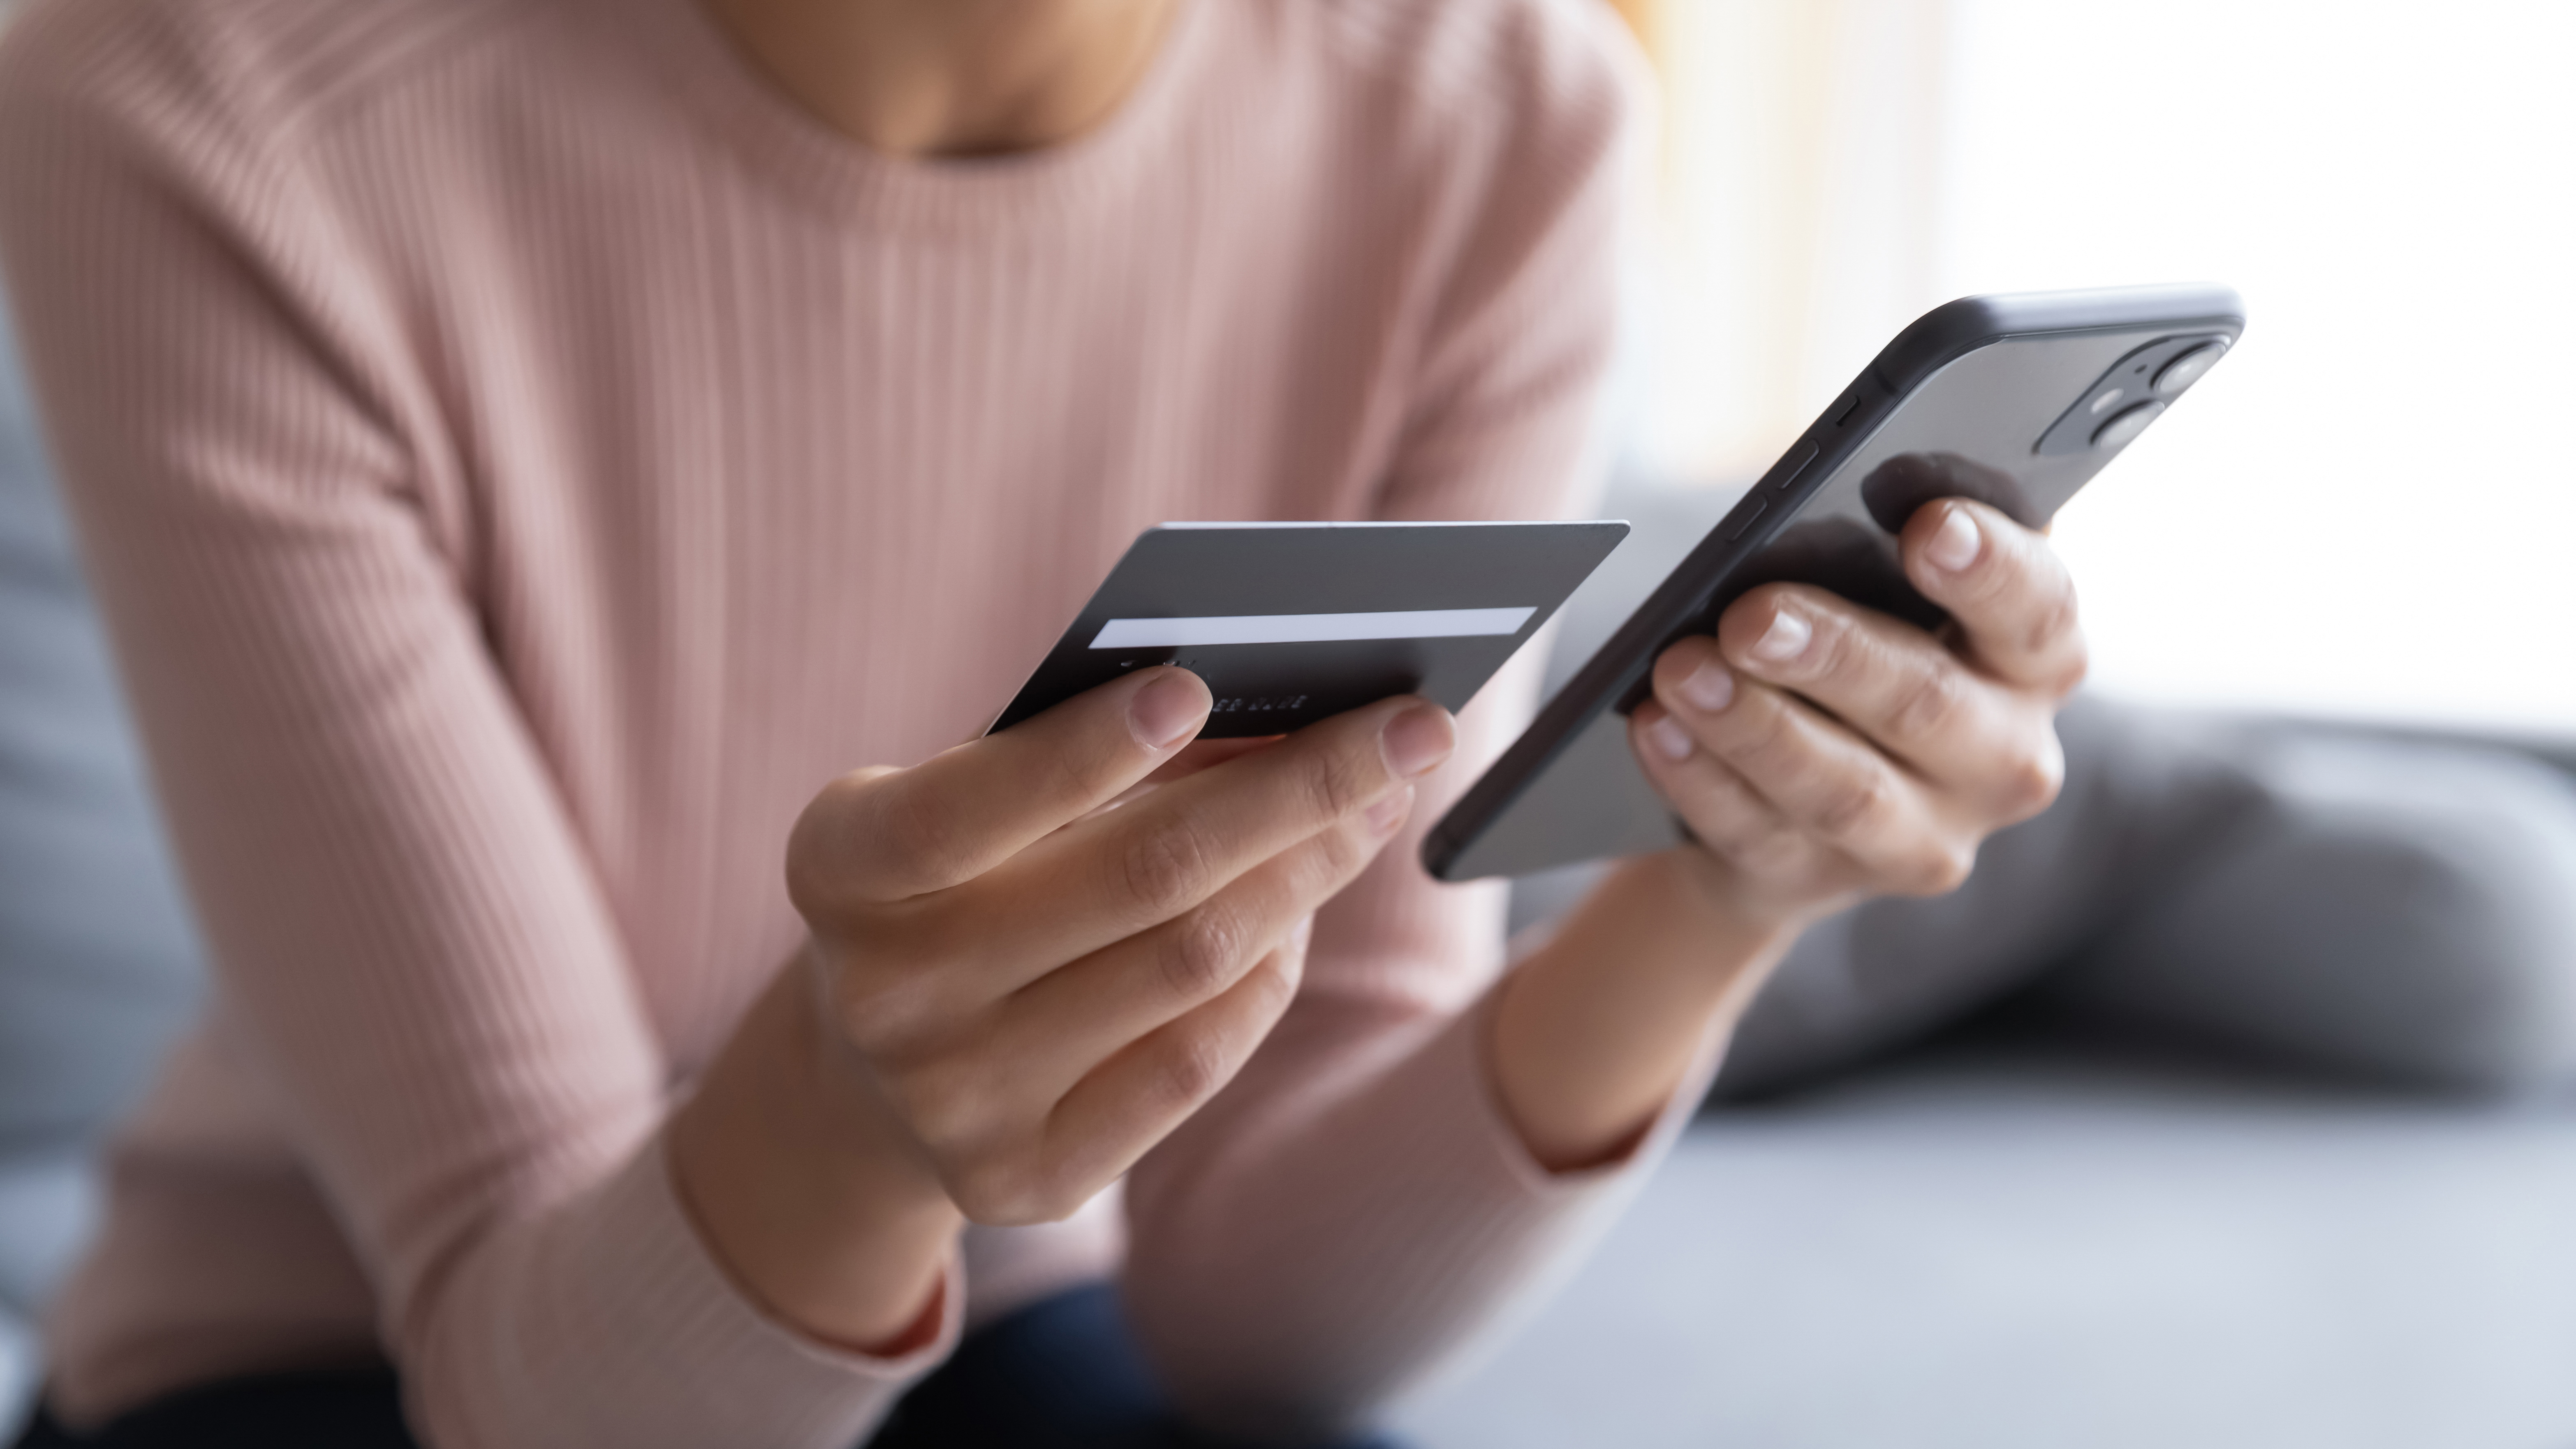 Eine Frau, die eine Online-Transaktion durchführt | Quelle: Shutterstock